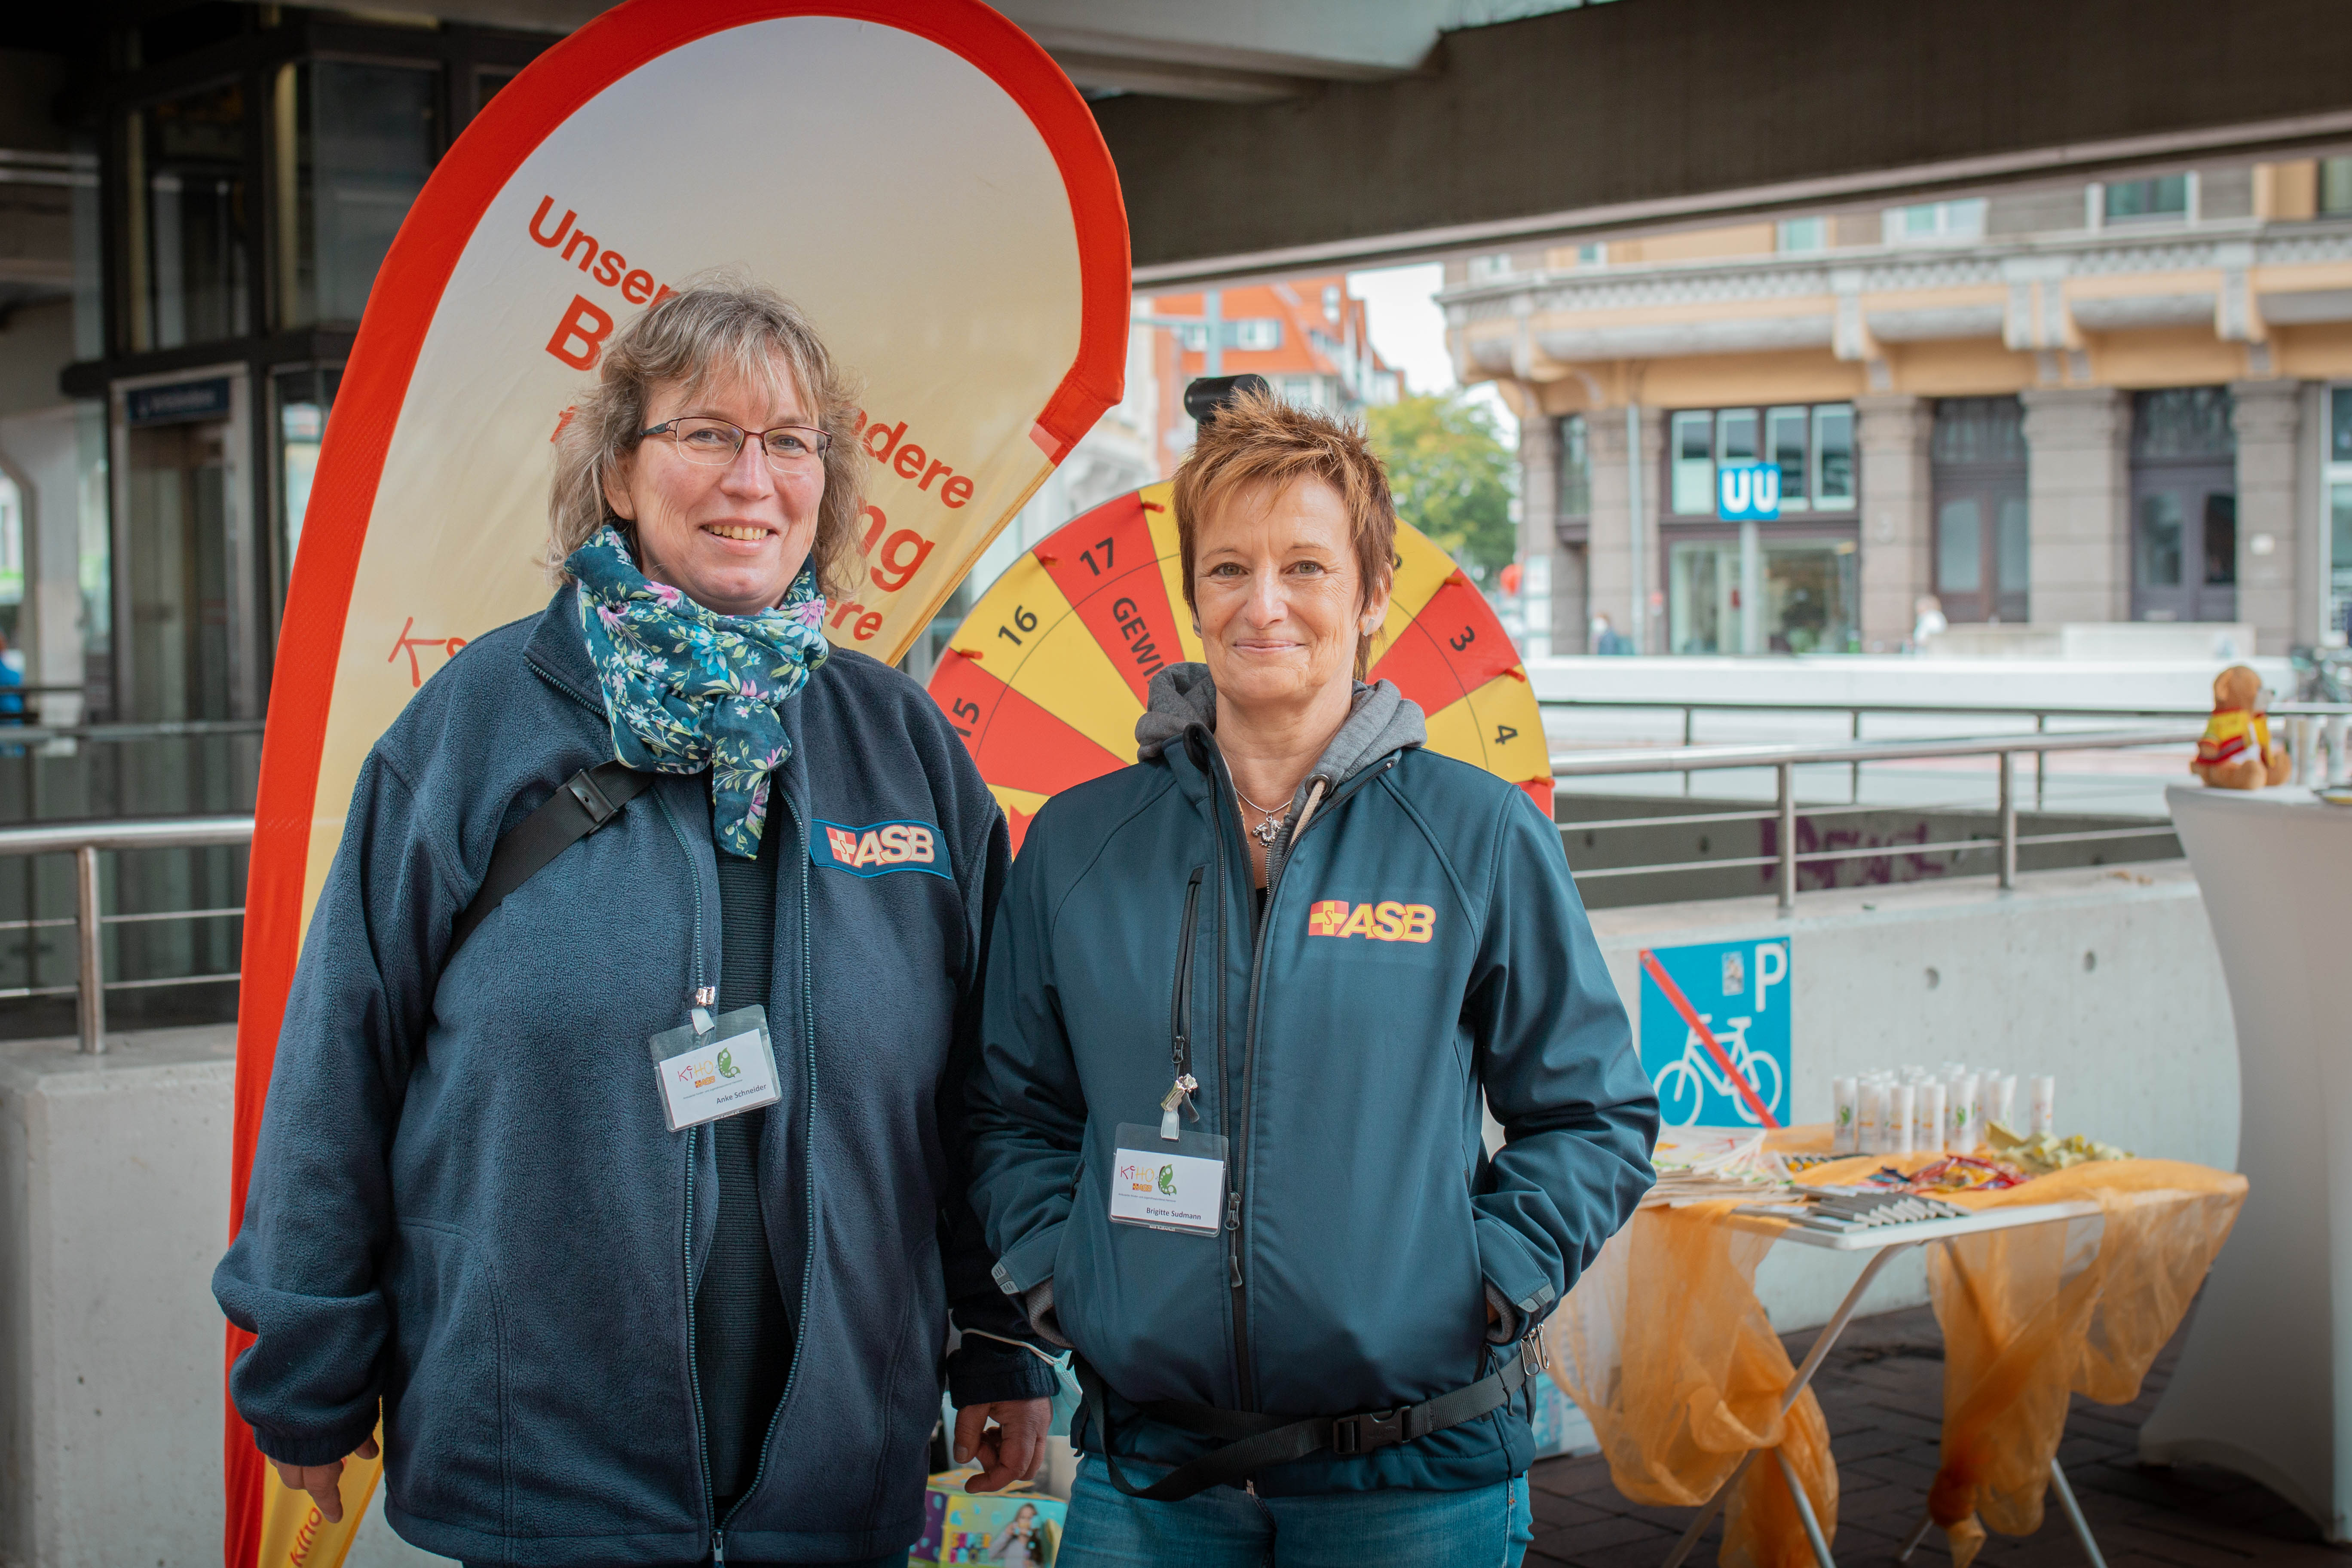 Aktionswoche bei Göing zum Thema ambulanter Kinder-und Jugendhospizdienst des ASB Hannover